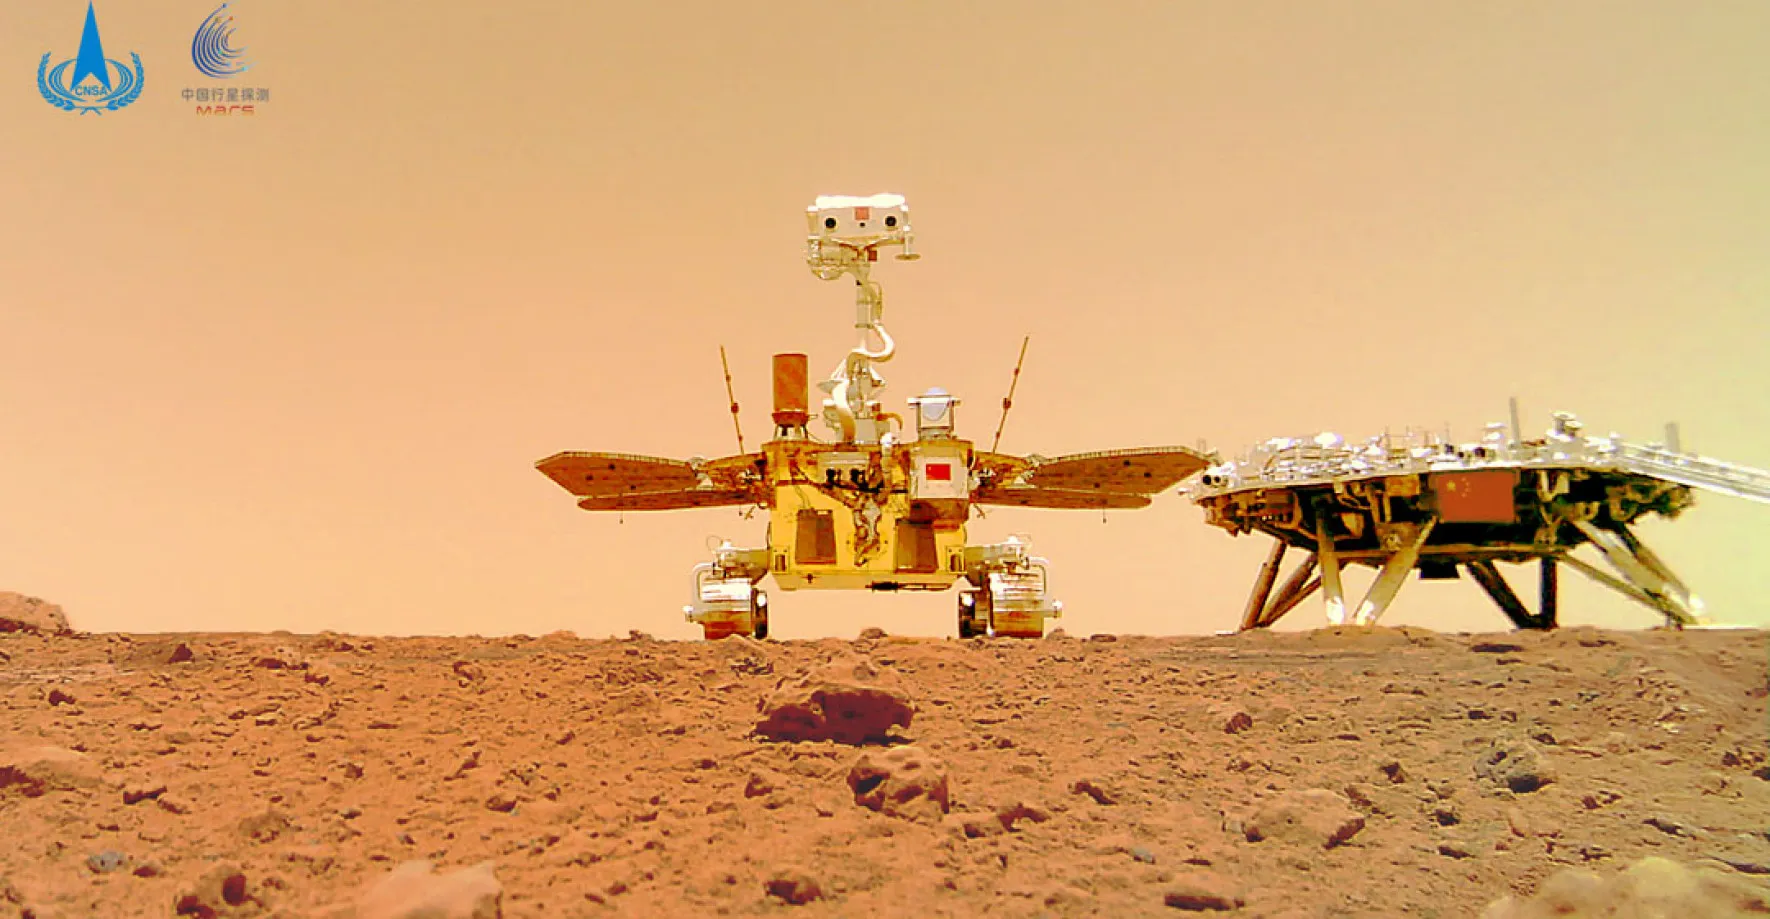 Čínský rover Zhurong se dlouho nepohnul, misi ale splnil. Pronikl pod povrch Marsu